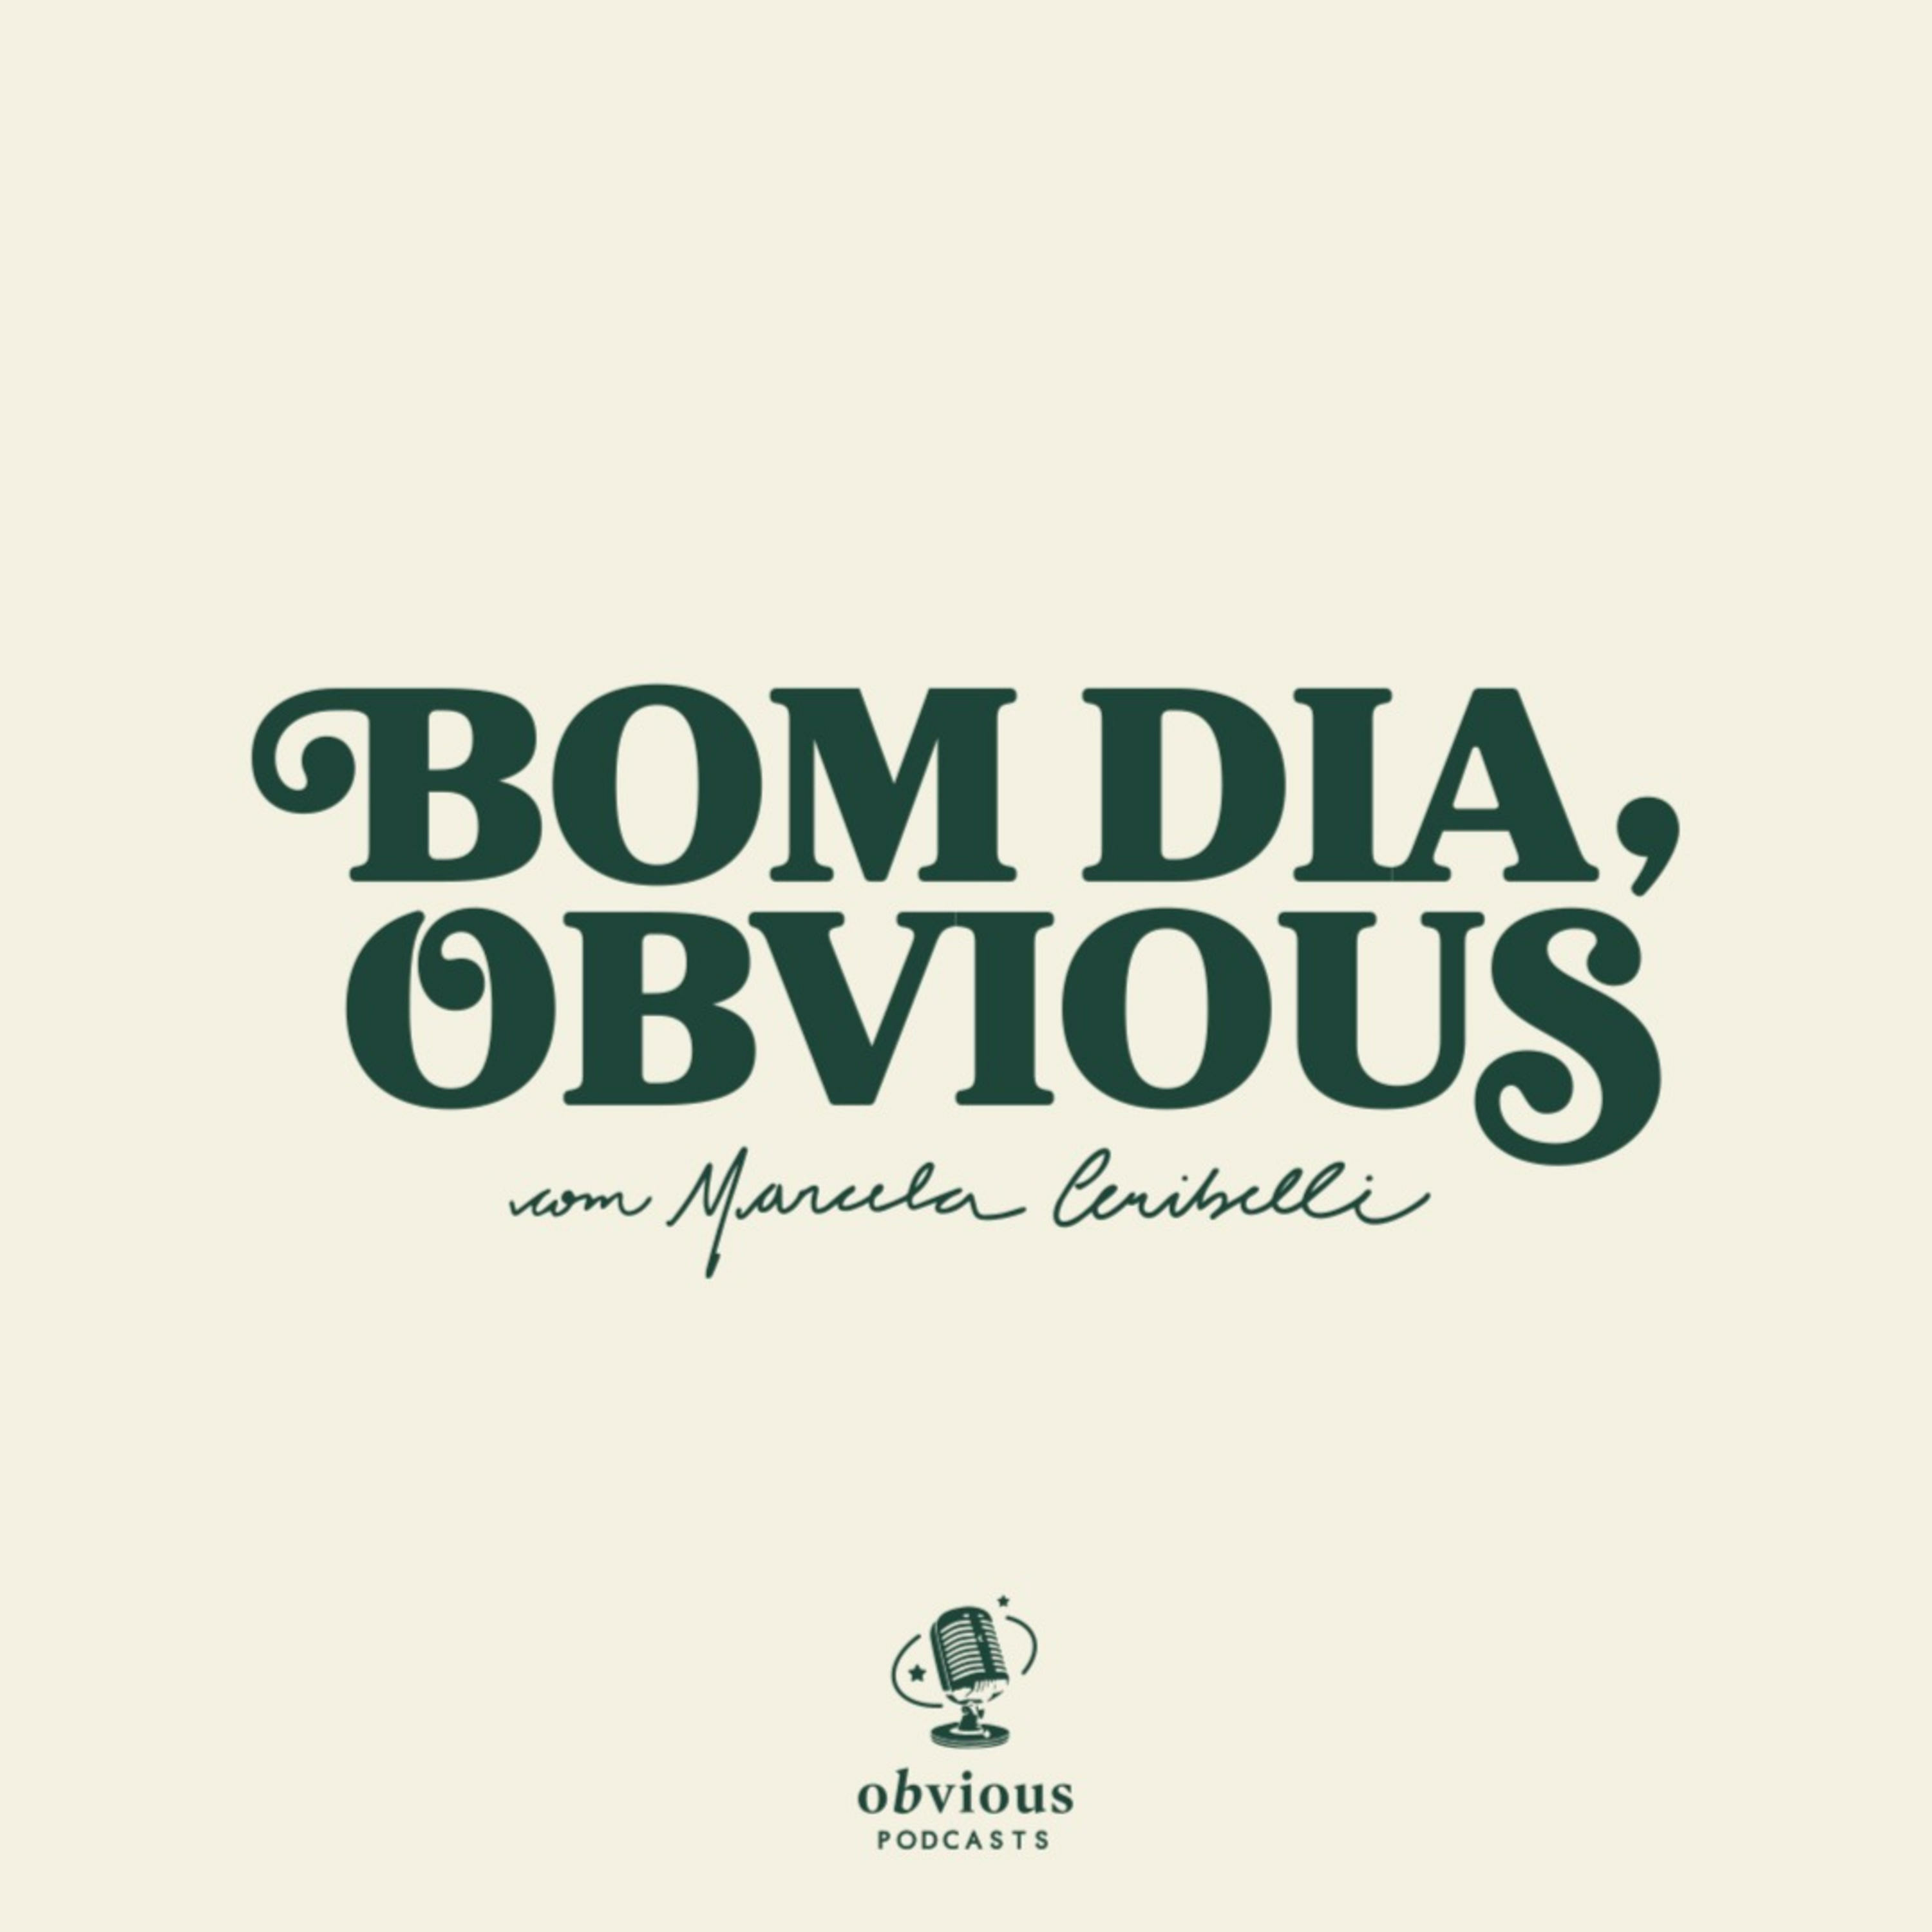 Crunchyroll Brasil  Podcast on Spotify